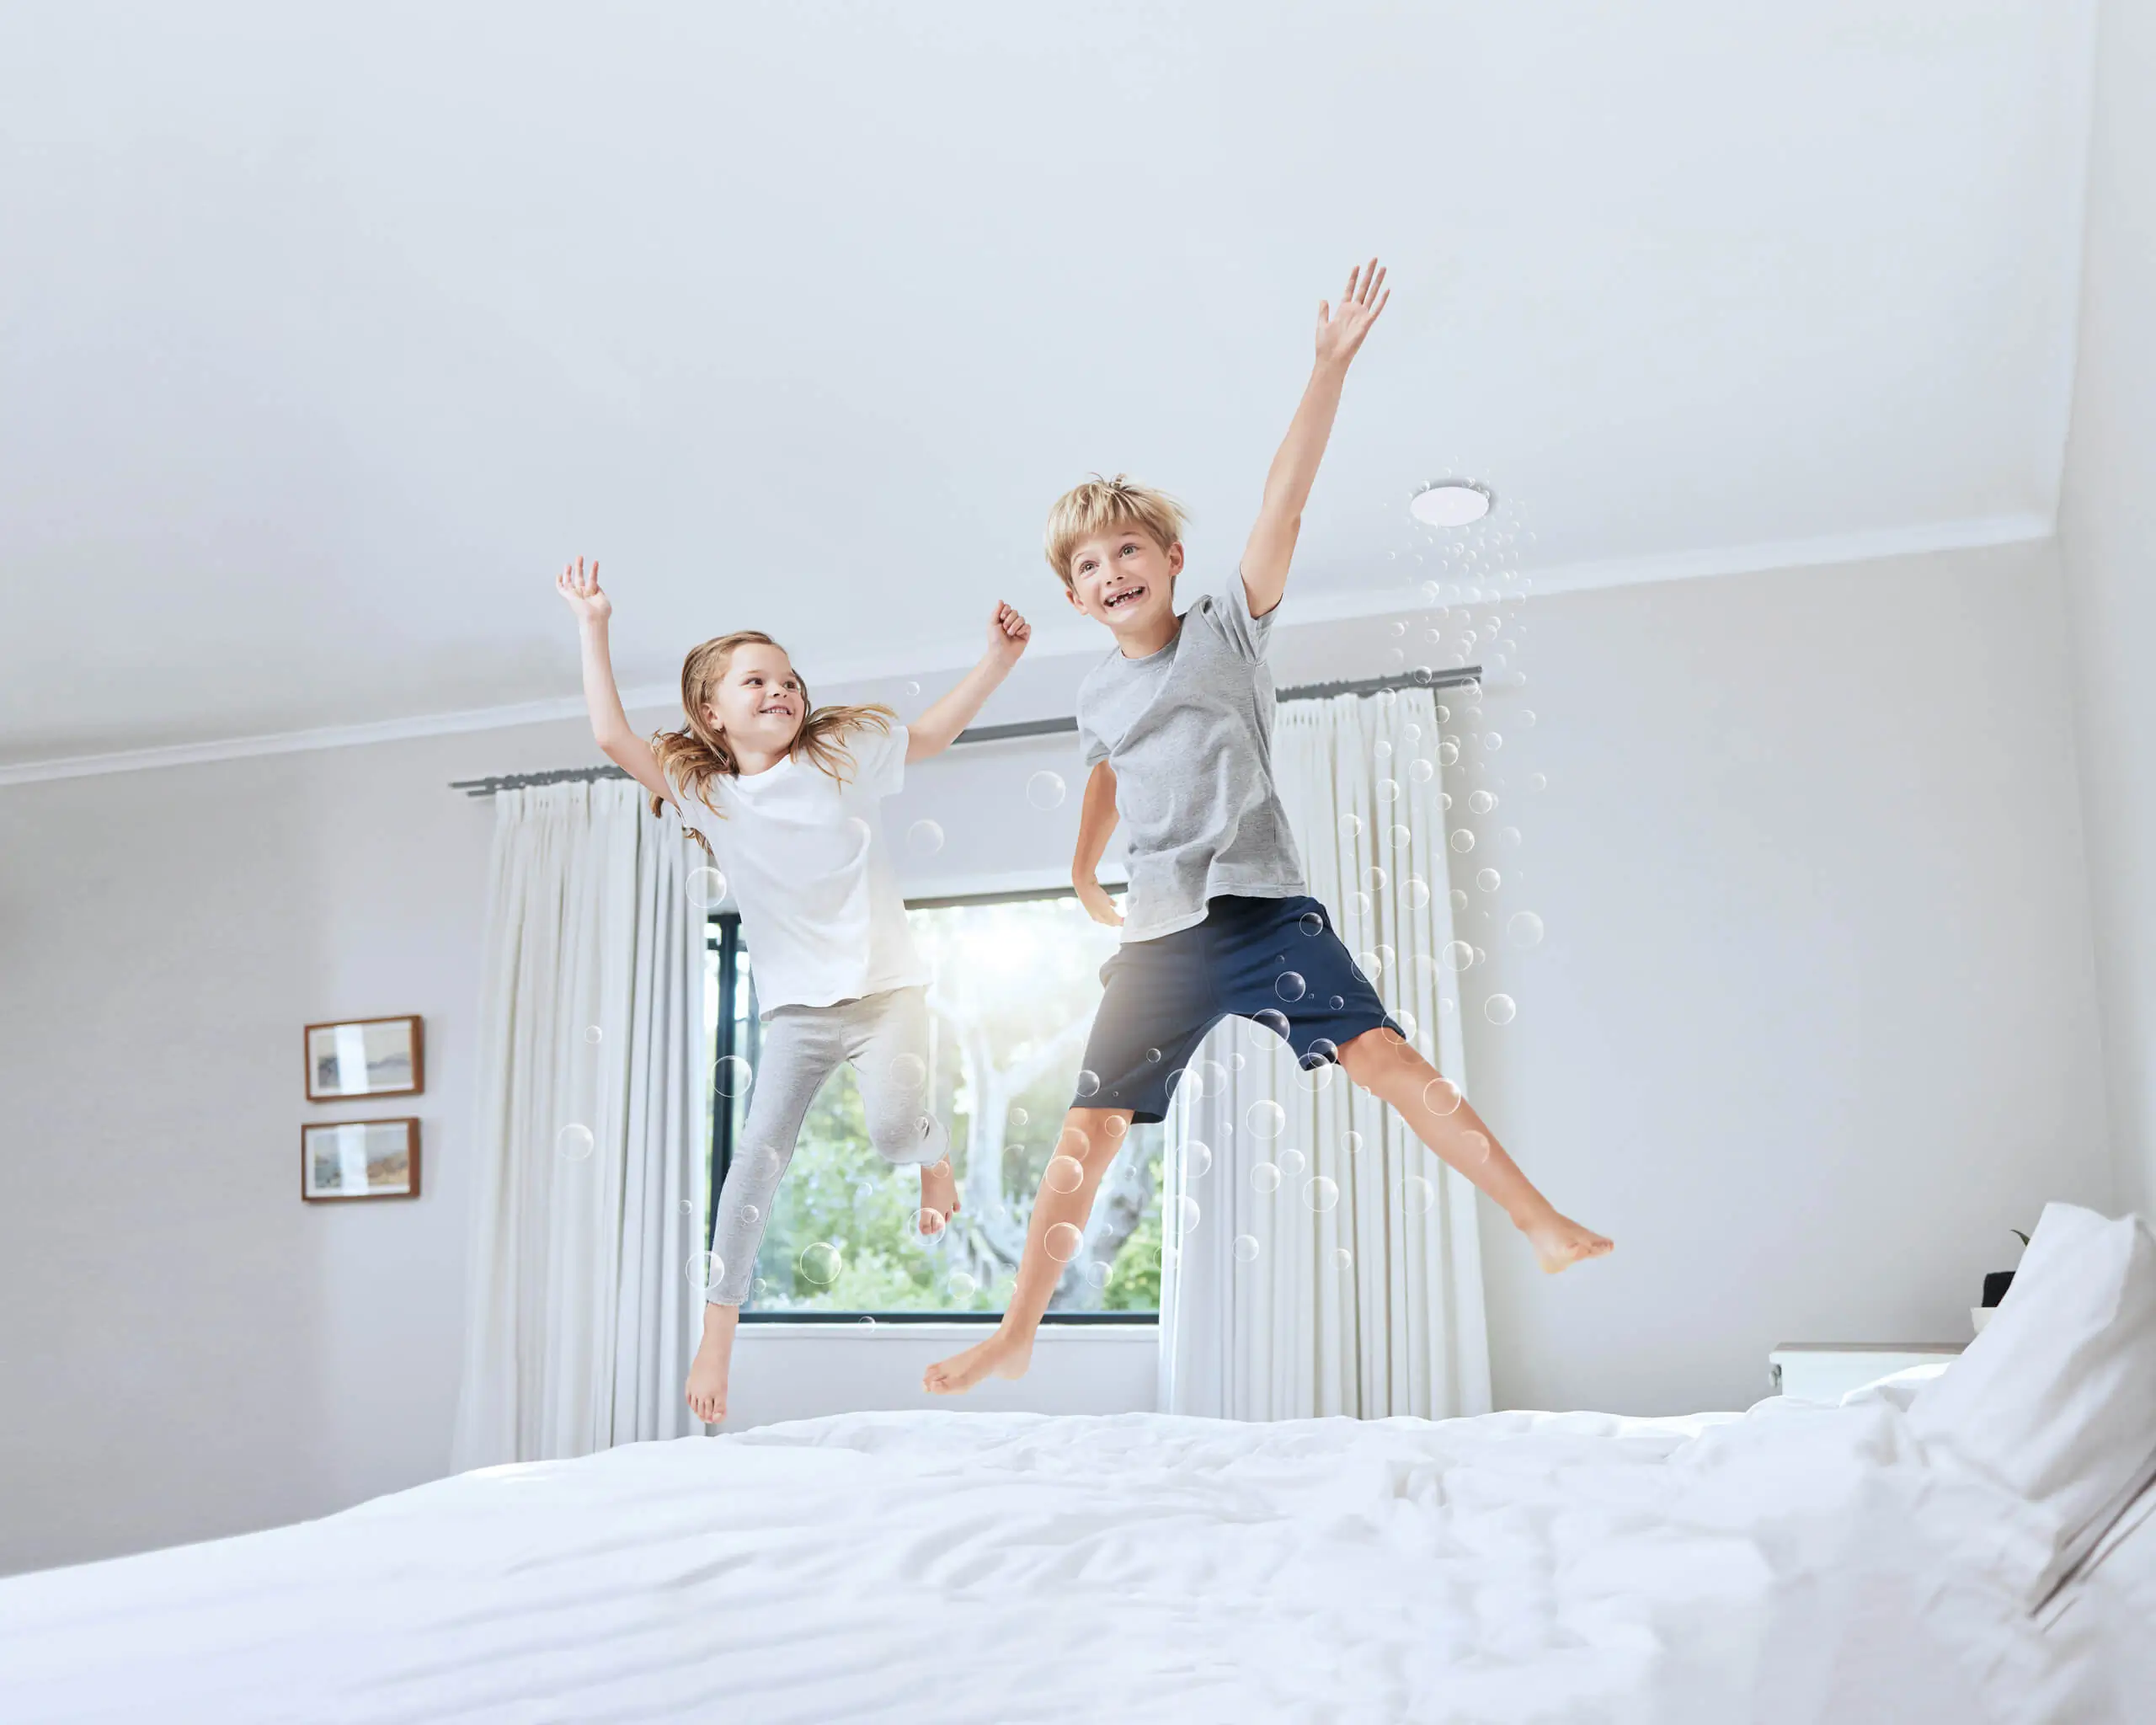 2 lachende kinderen springen op het bed in een kamer met verse lucht dankzij de zonale ventilatie en het ventiel in het plafond